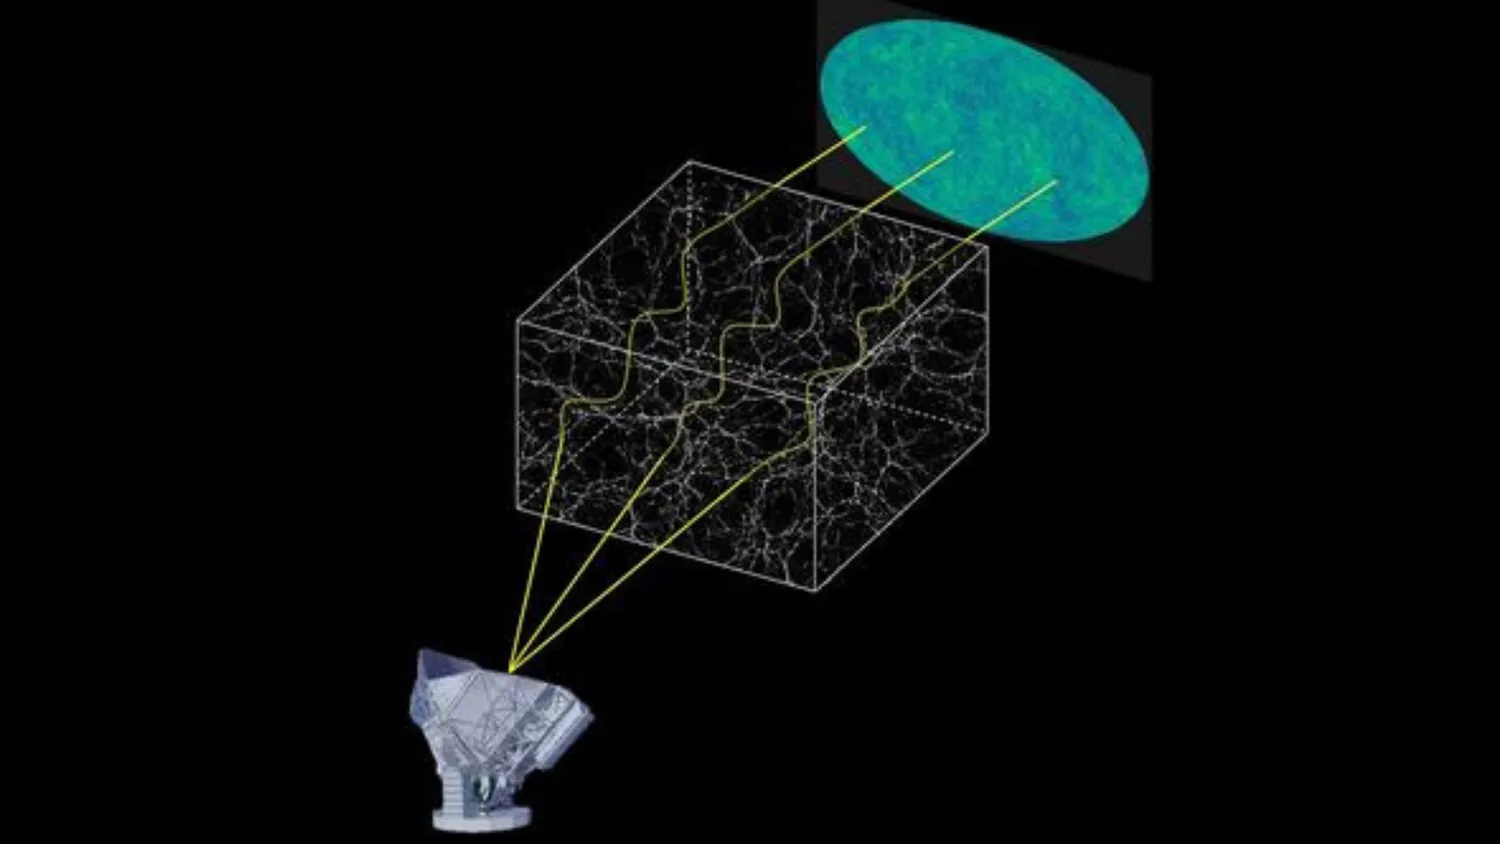 Das Diagramm zeigt, wie das Südpolteleskop den kosmischen Mikrowellenhintergrund nutzt, um die Verteilung der dunklen Materie zu beobachten